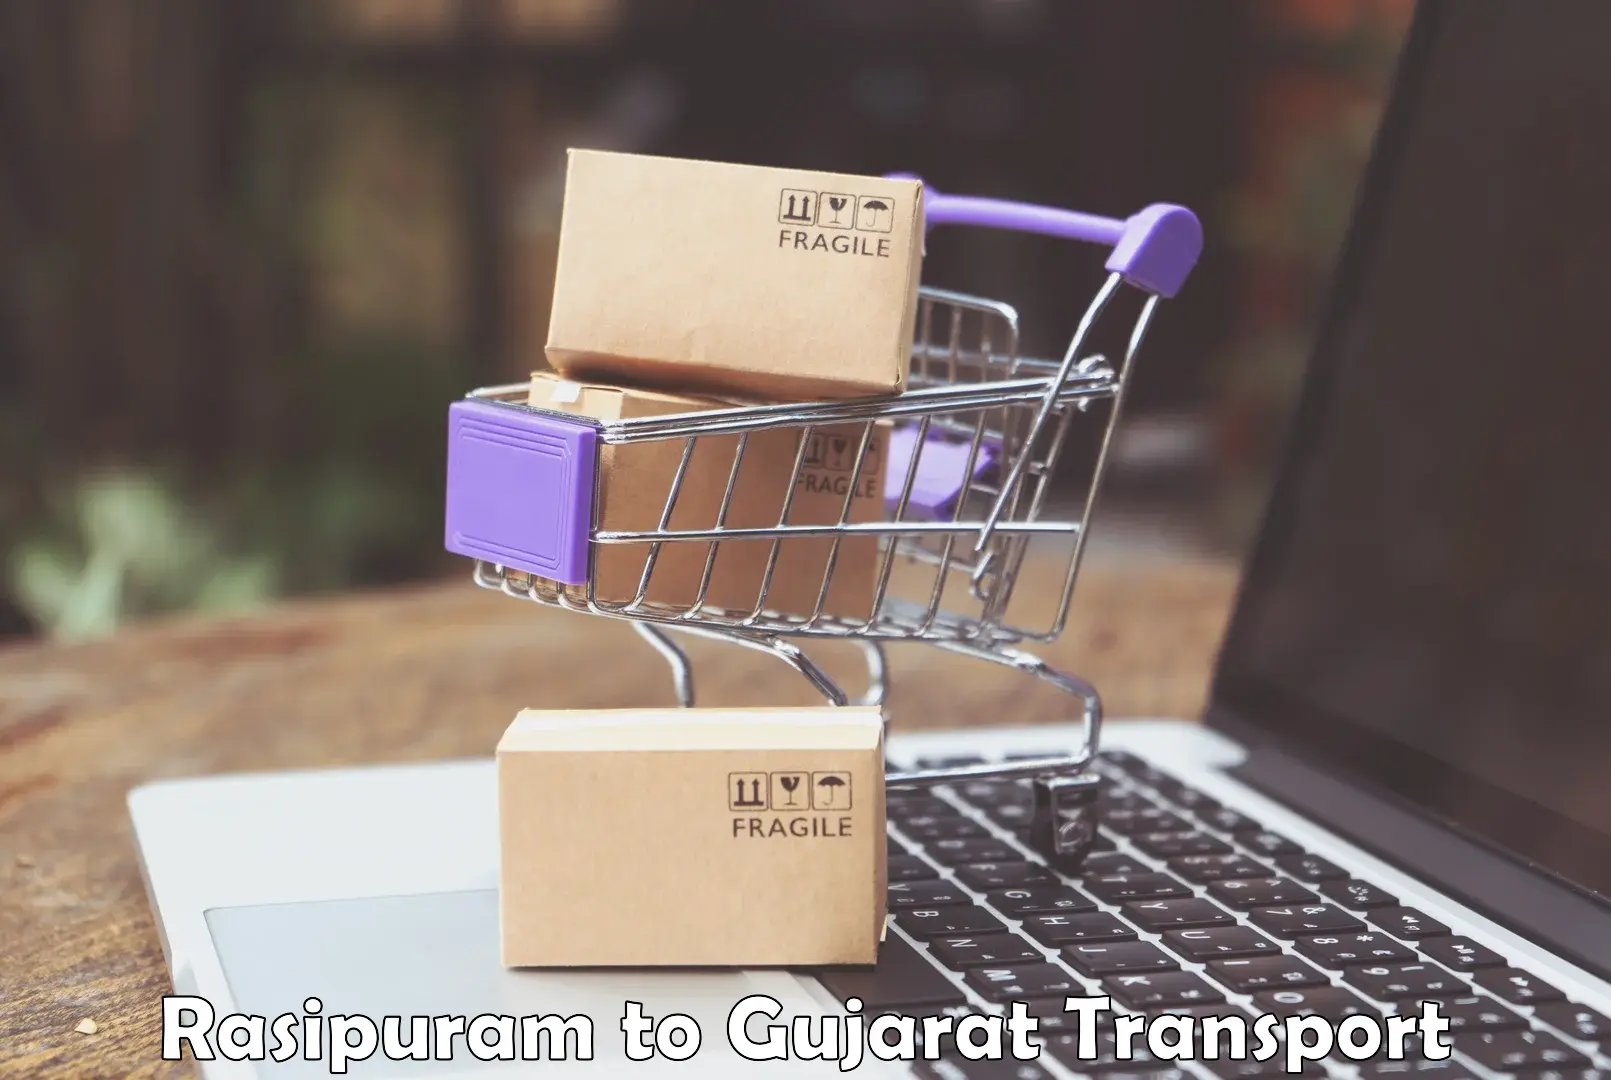 Delivery service Rasipuram to Gujarat